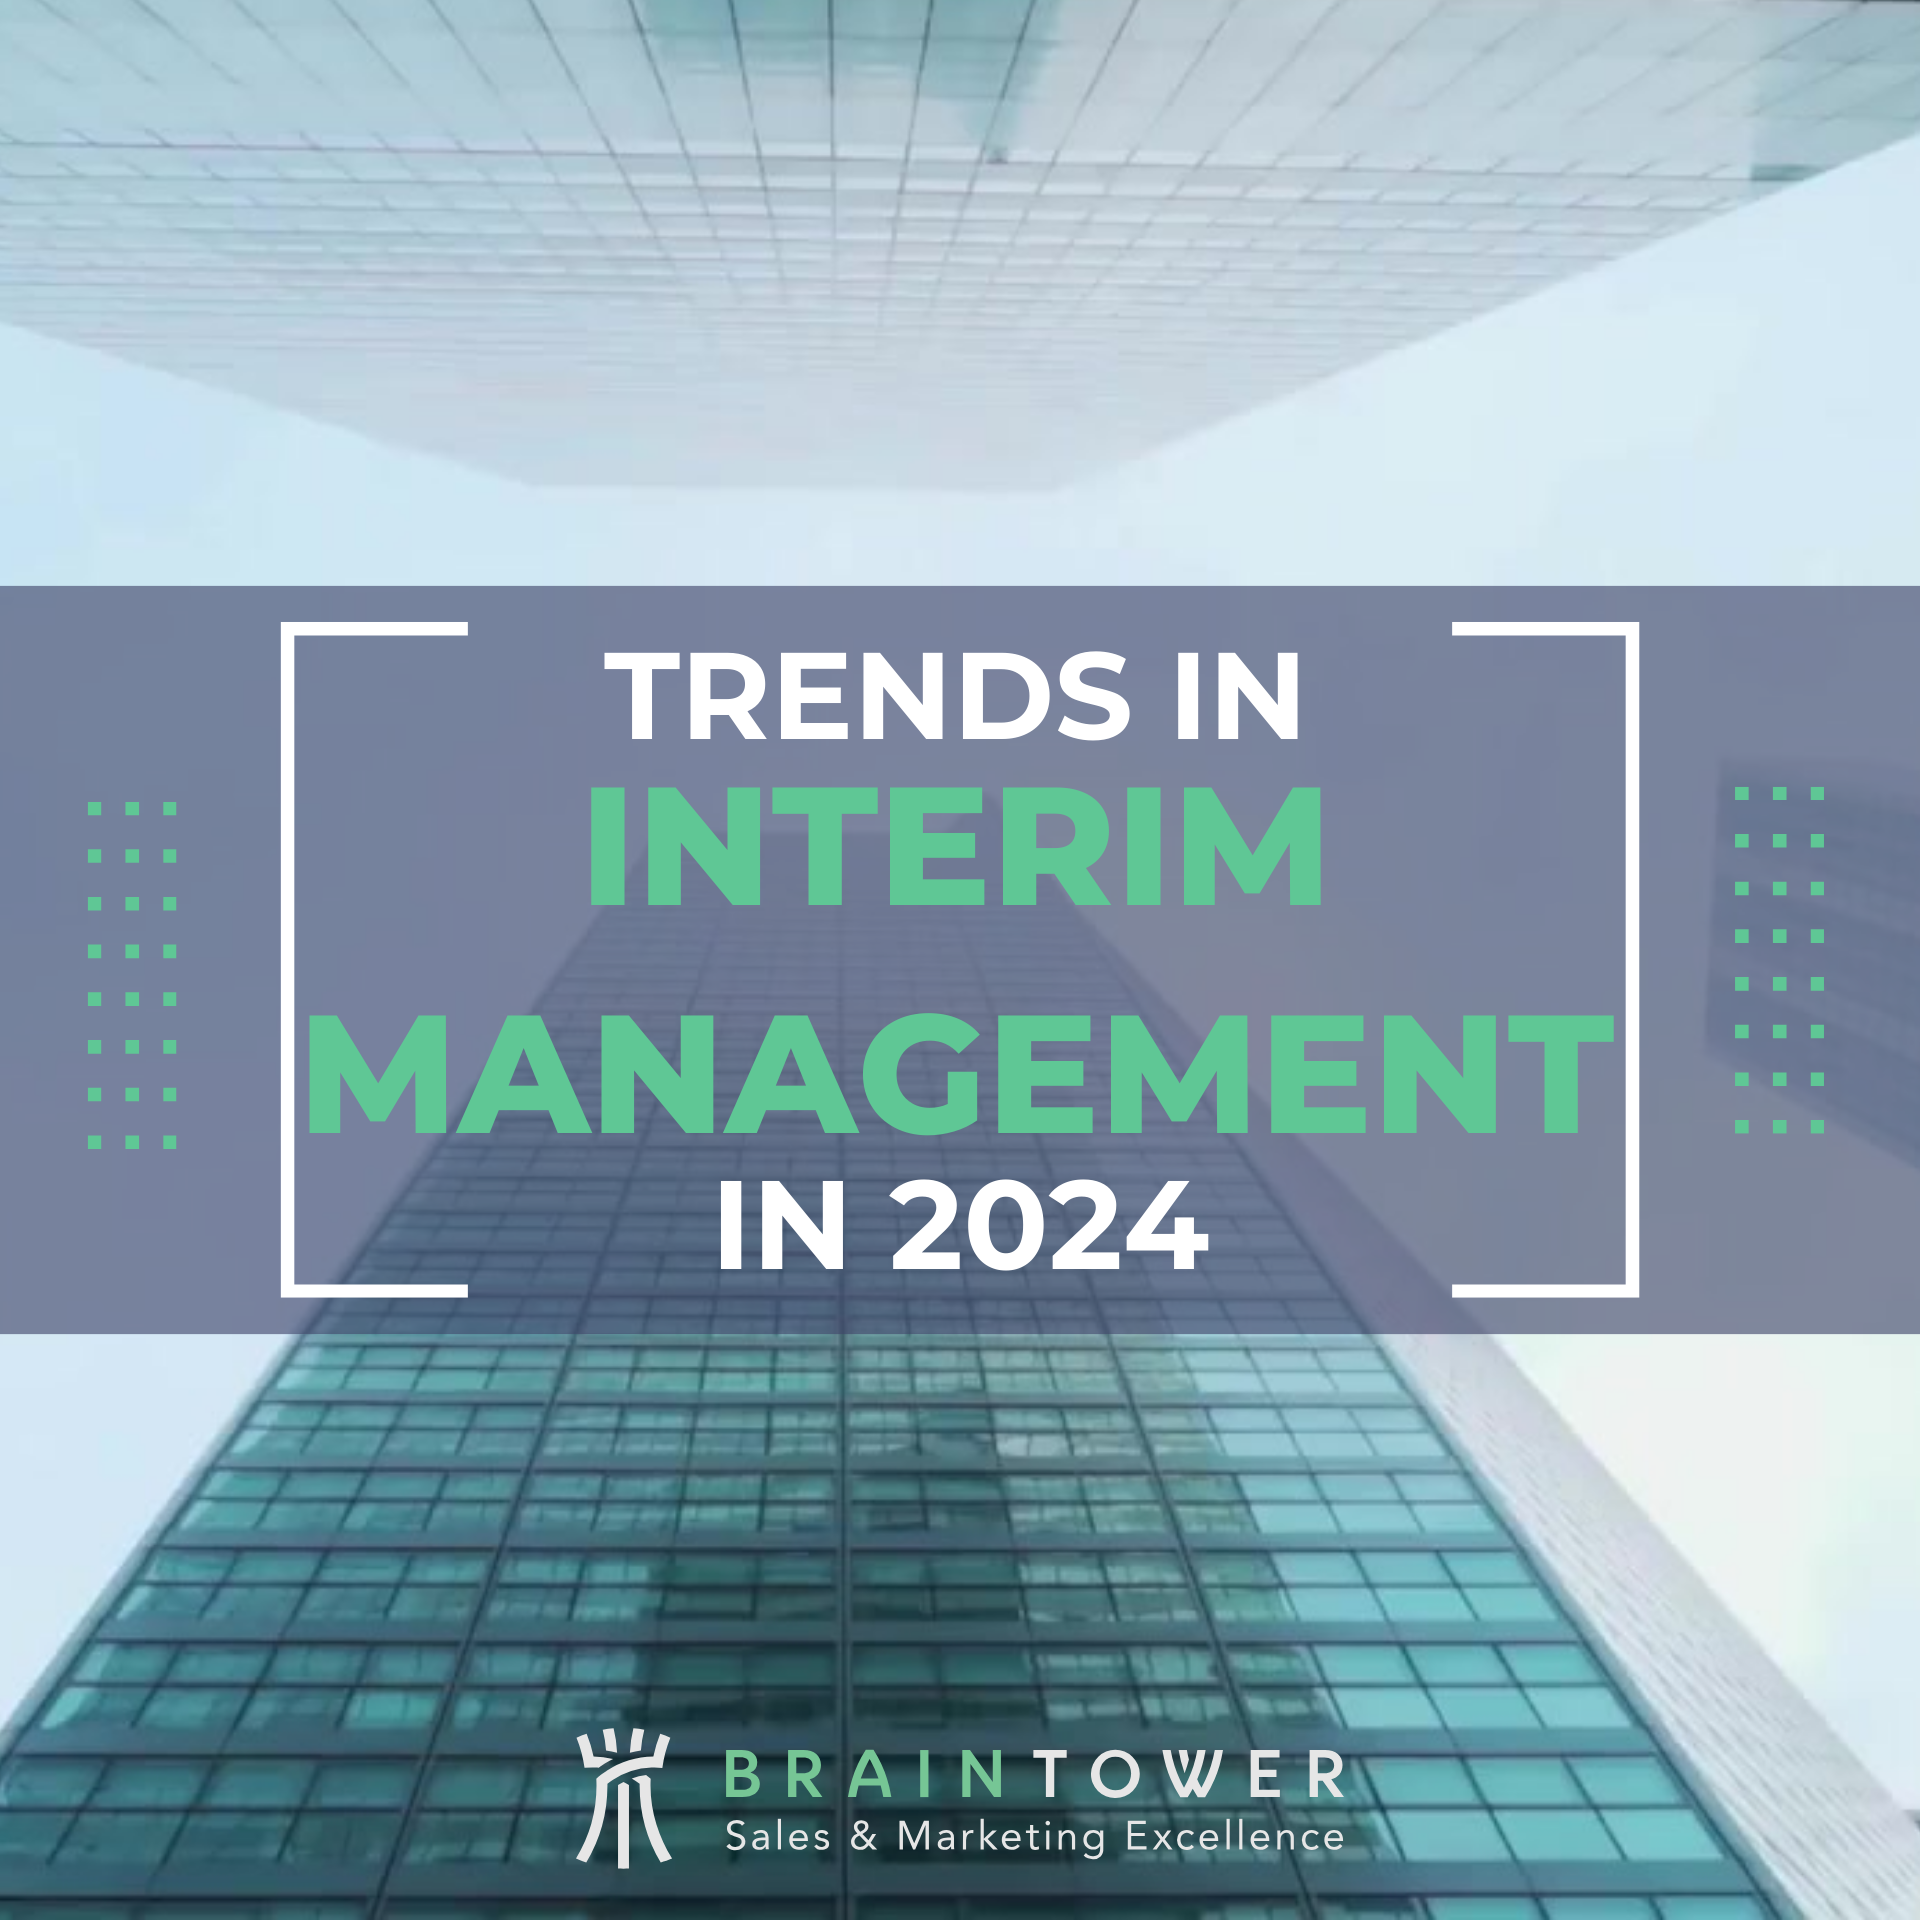 interim management trends in 2024